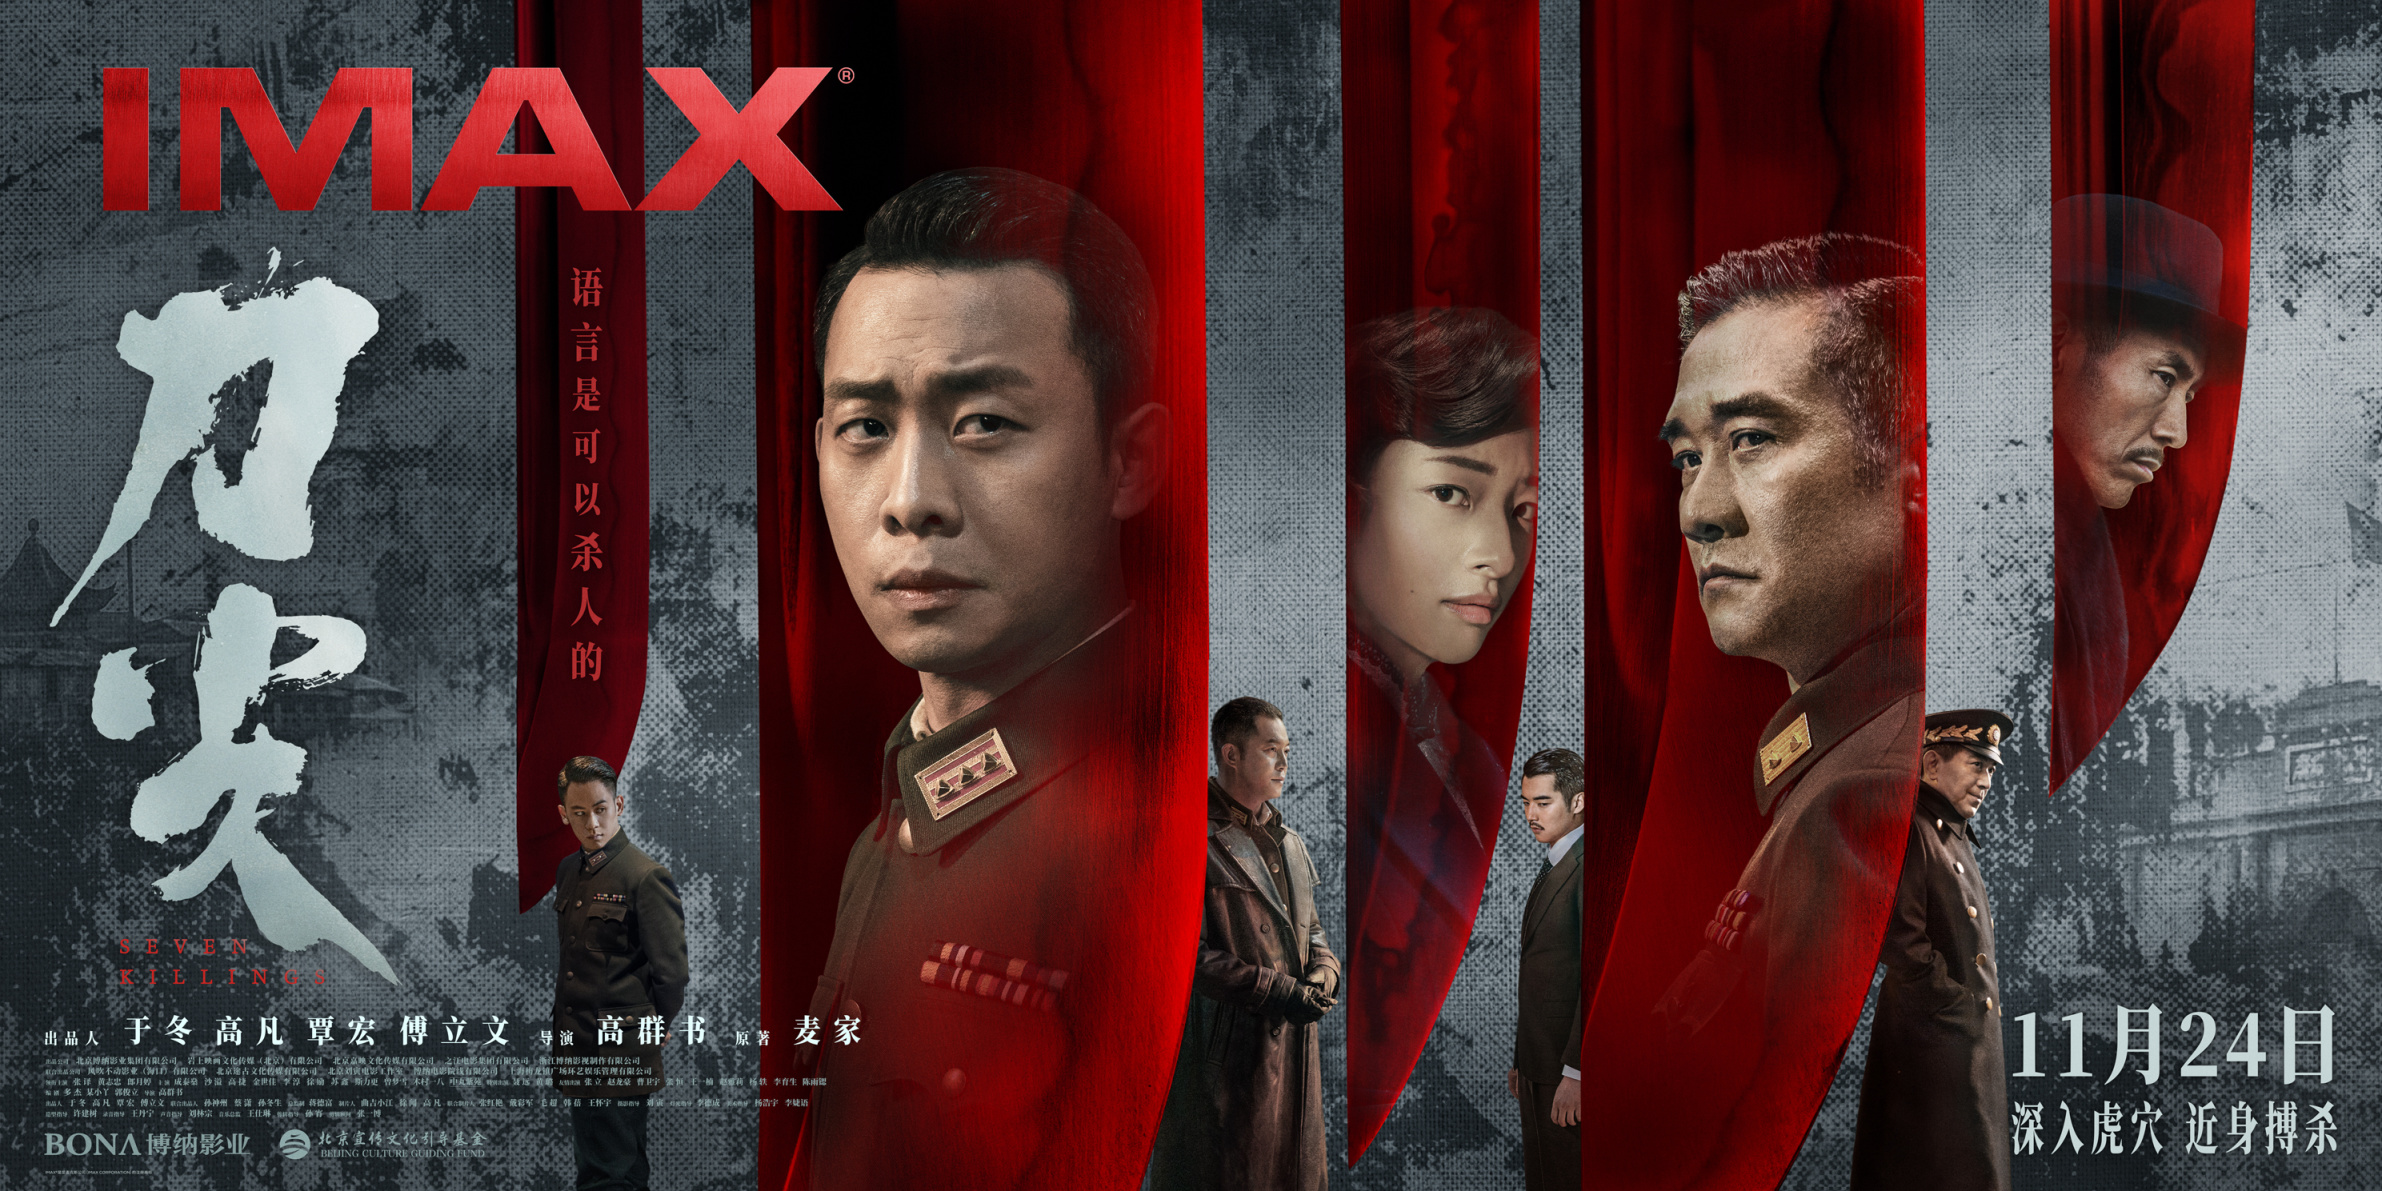 【影視動漫】諜戰電影《刀尖》11月24日登陸IMAX影院